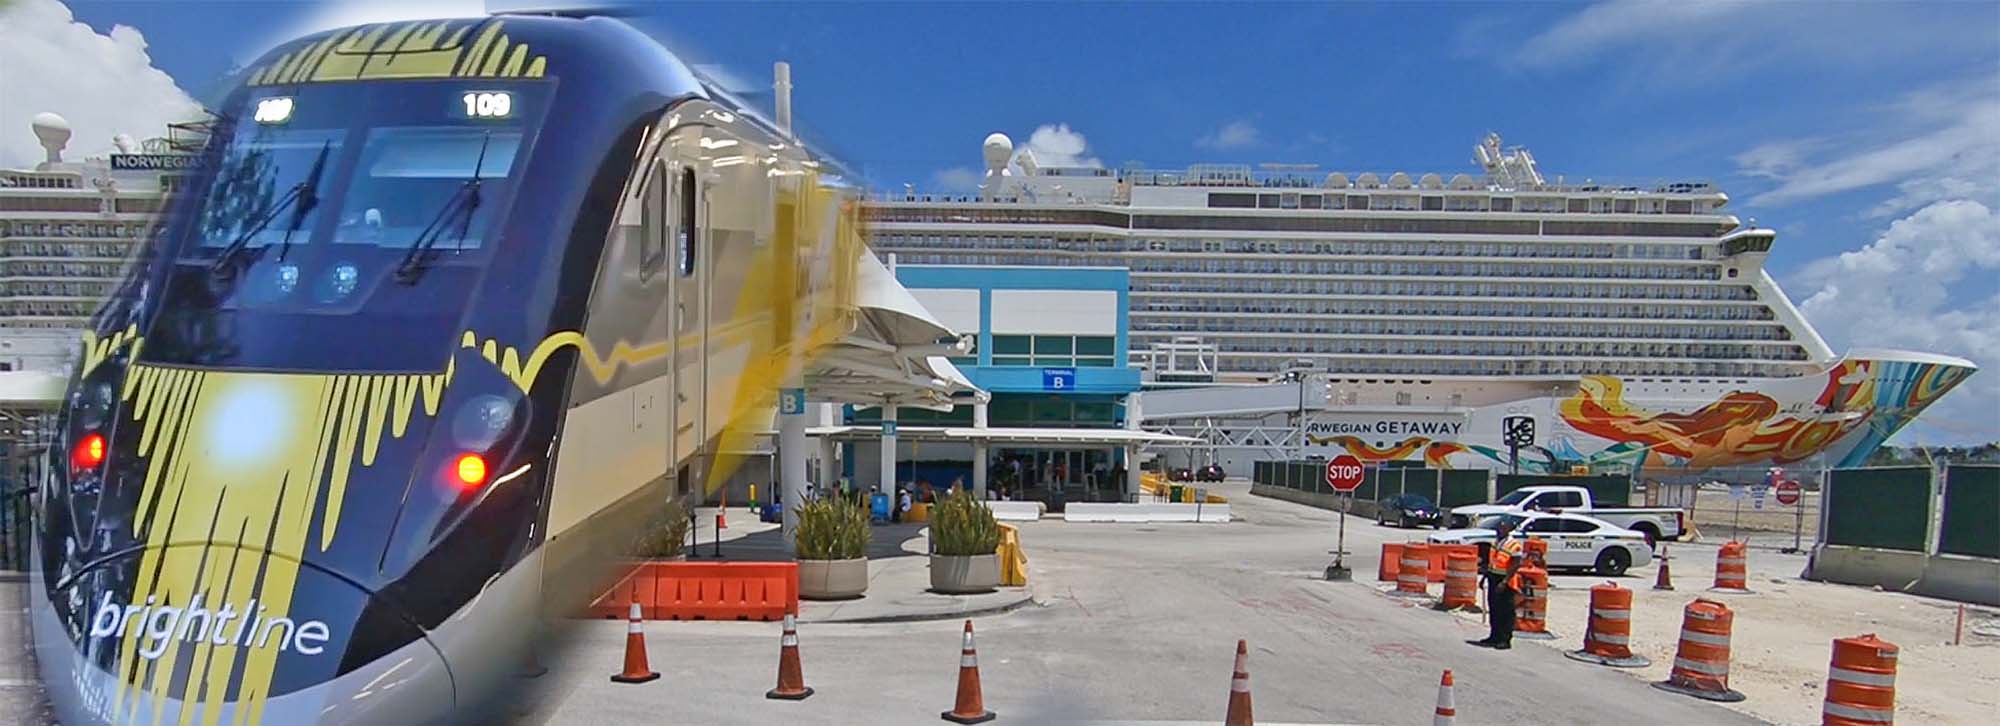 miami cruise port to brightline station